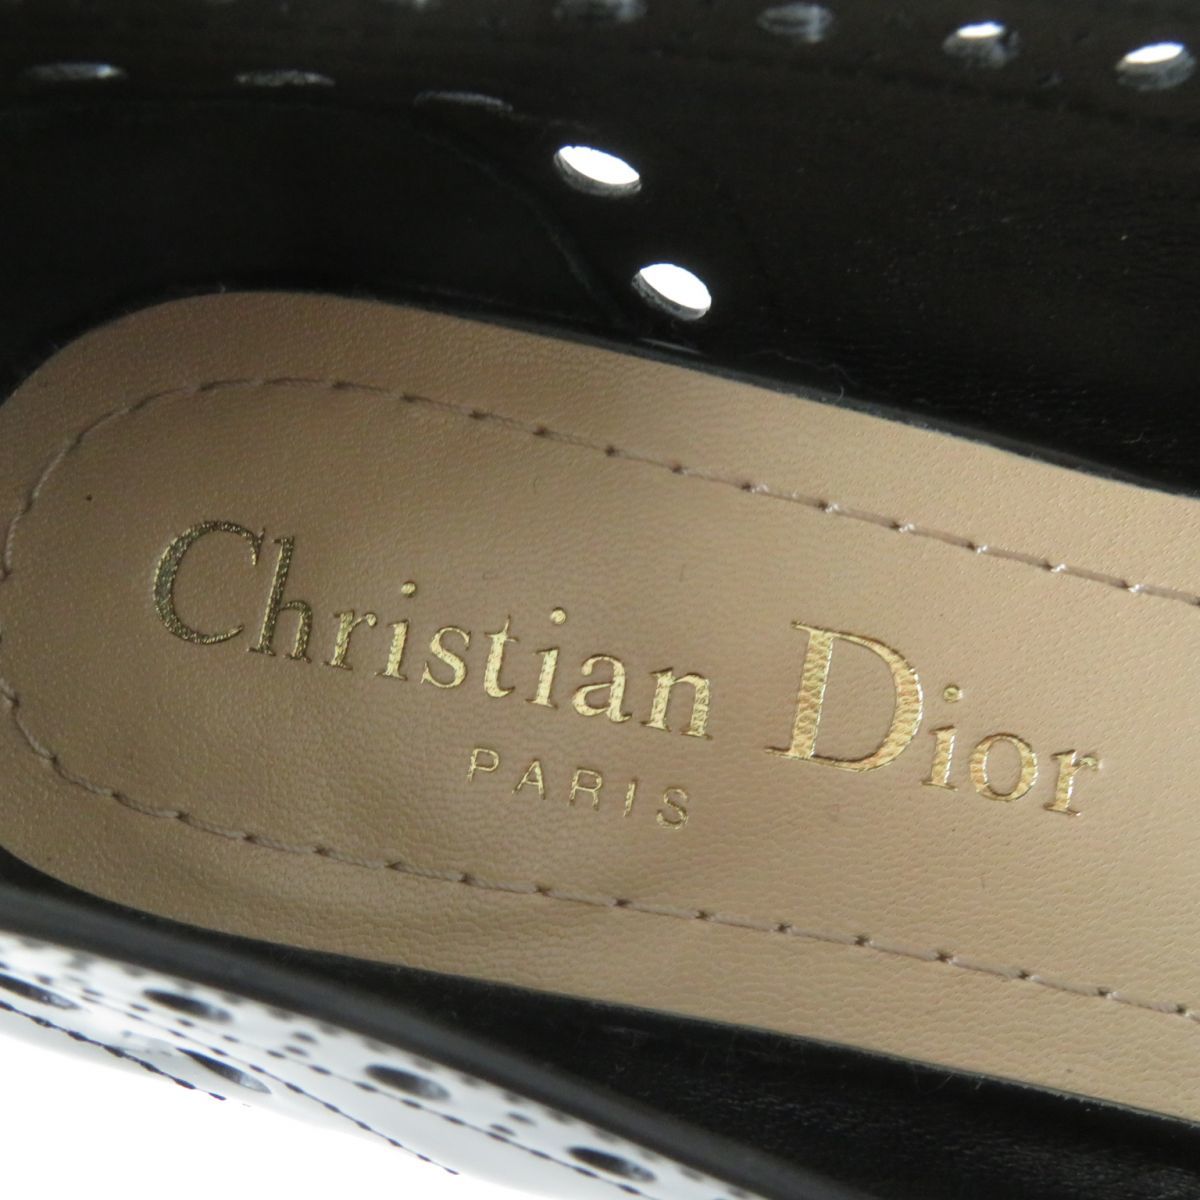 美品★Christian Dior クリスチャンディオール TEDDY D パンチングデザイン ロゴ金具付き ラウンドトゥ レザー パンプス 黒 36 イタリア製_画像9